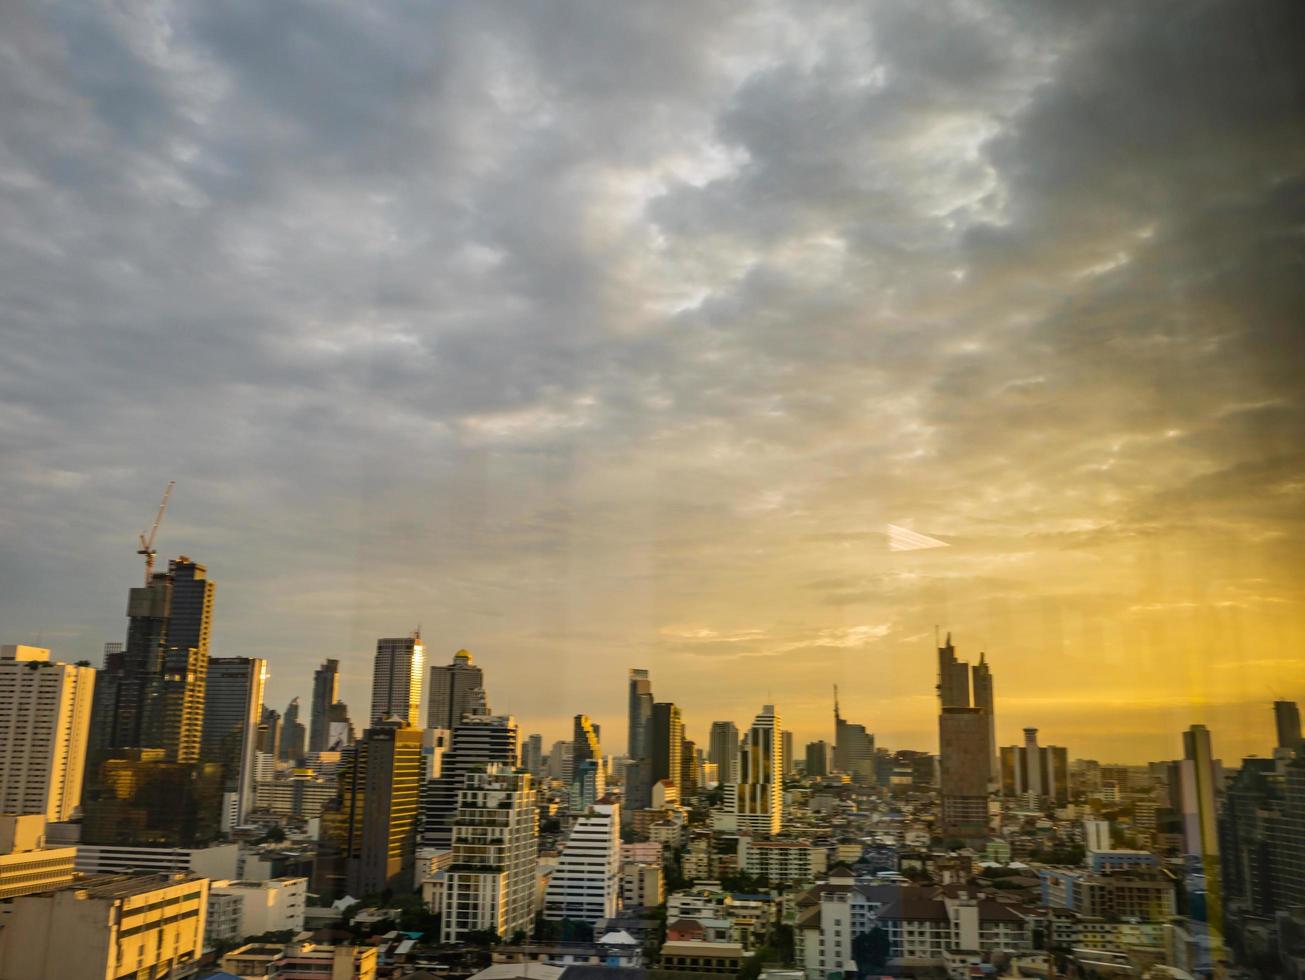 Bangkok city scape with orange sunset sky photo